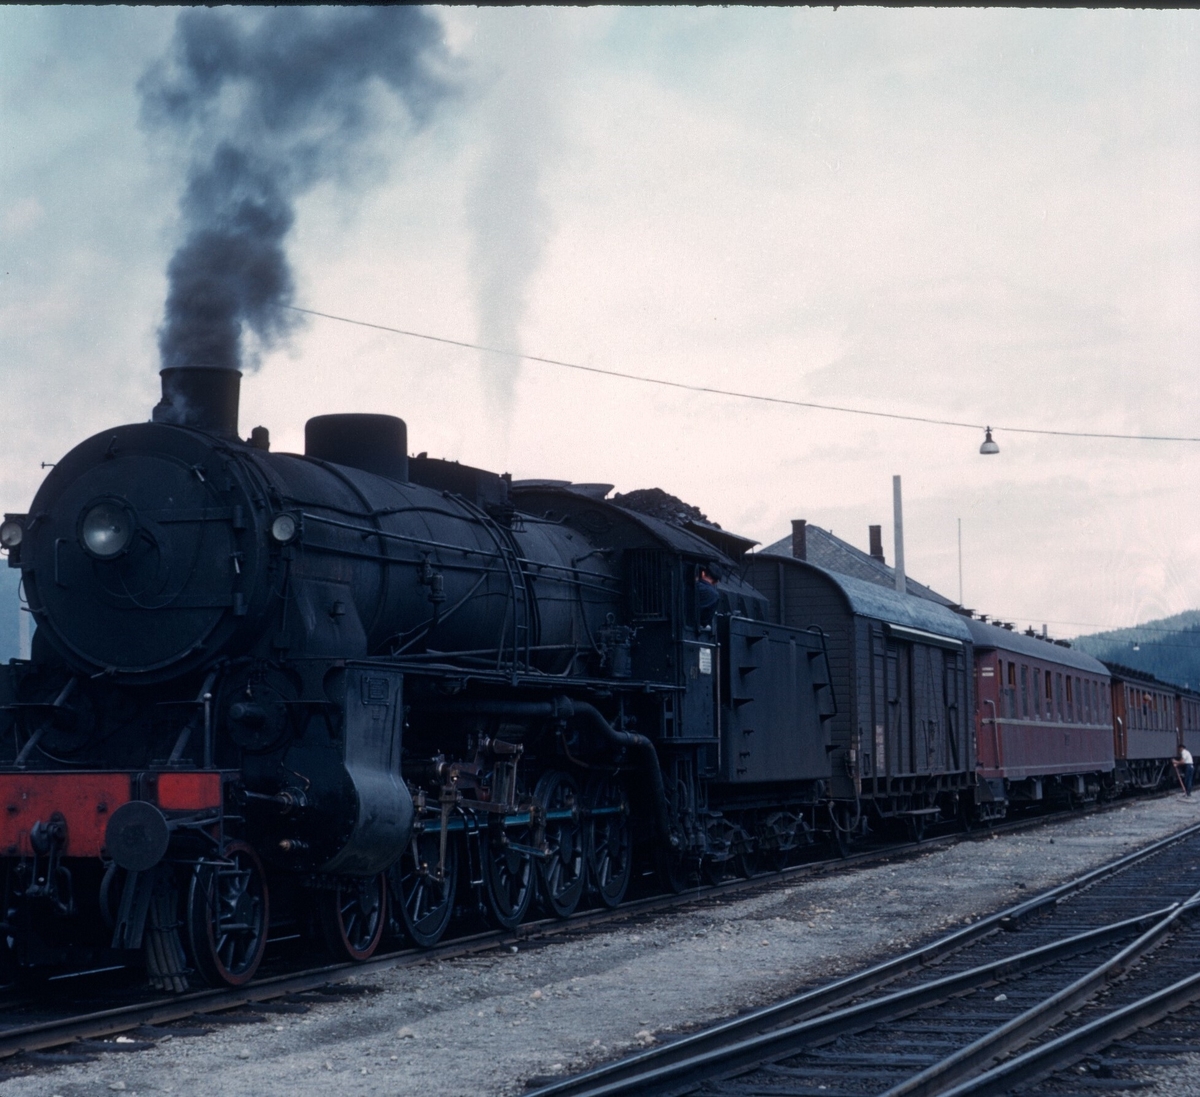 Ekstratog til Bergen kommer til Ål stasjon.
Toget blir trekt av damplokomotiv type 31b nr. 451 el. 401
Bildet er tatt av Thorbjørn Pedersen.